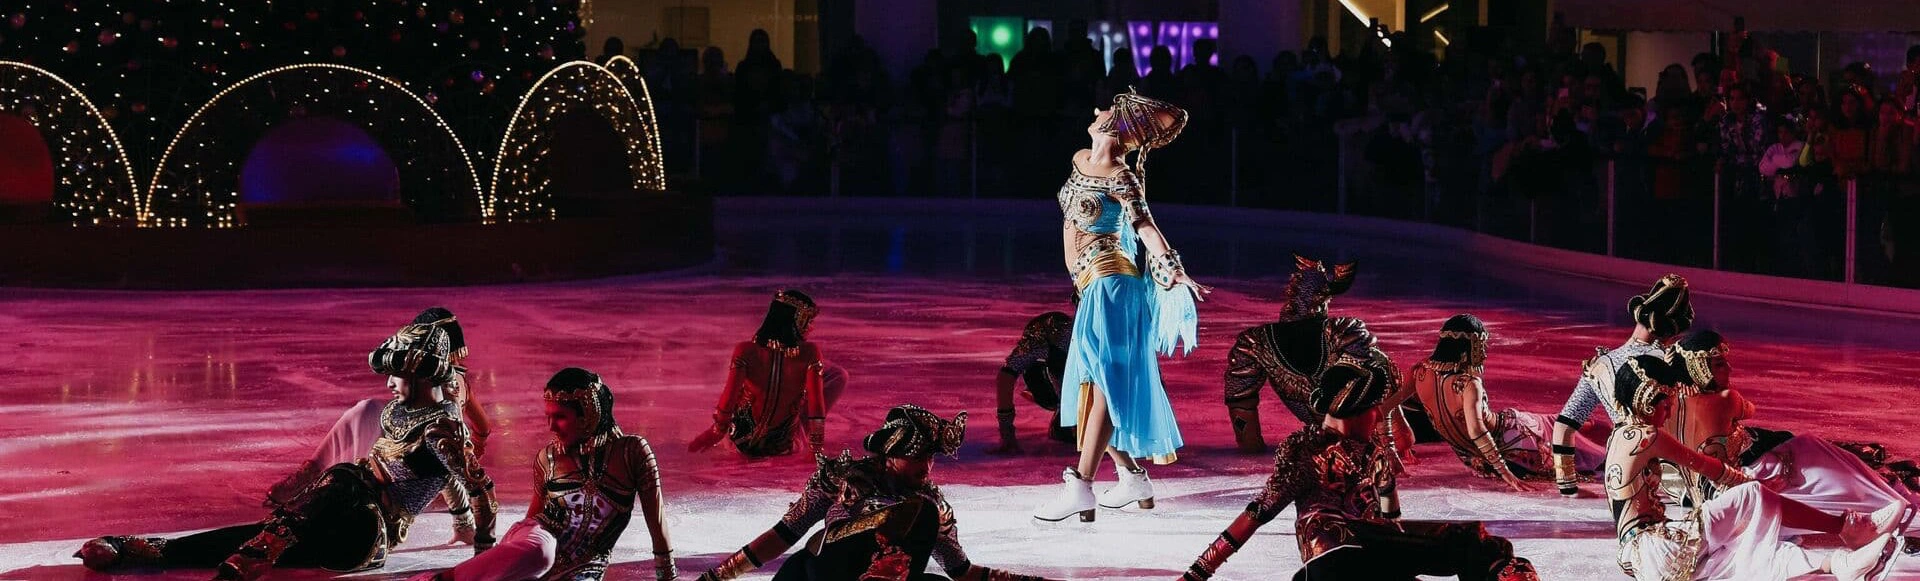 Волшебство на льду в СК Юбилейном: ледовое шоу Татьяны Навки «История любви Шахерезады»!